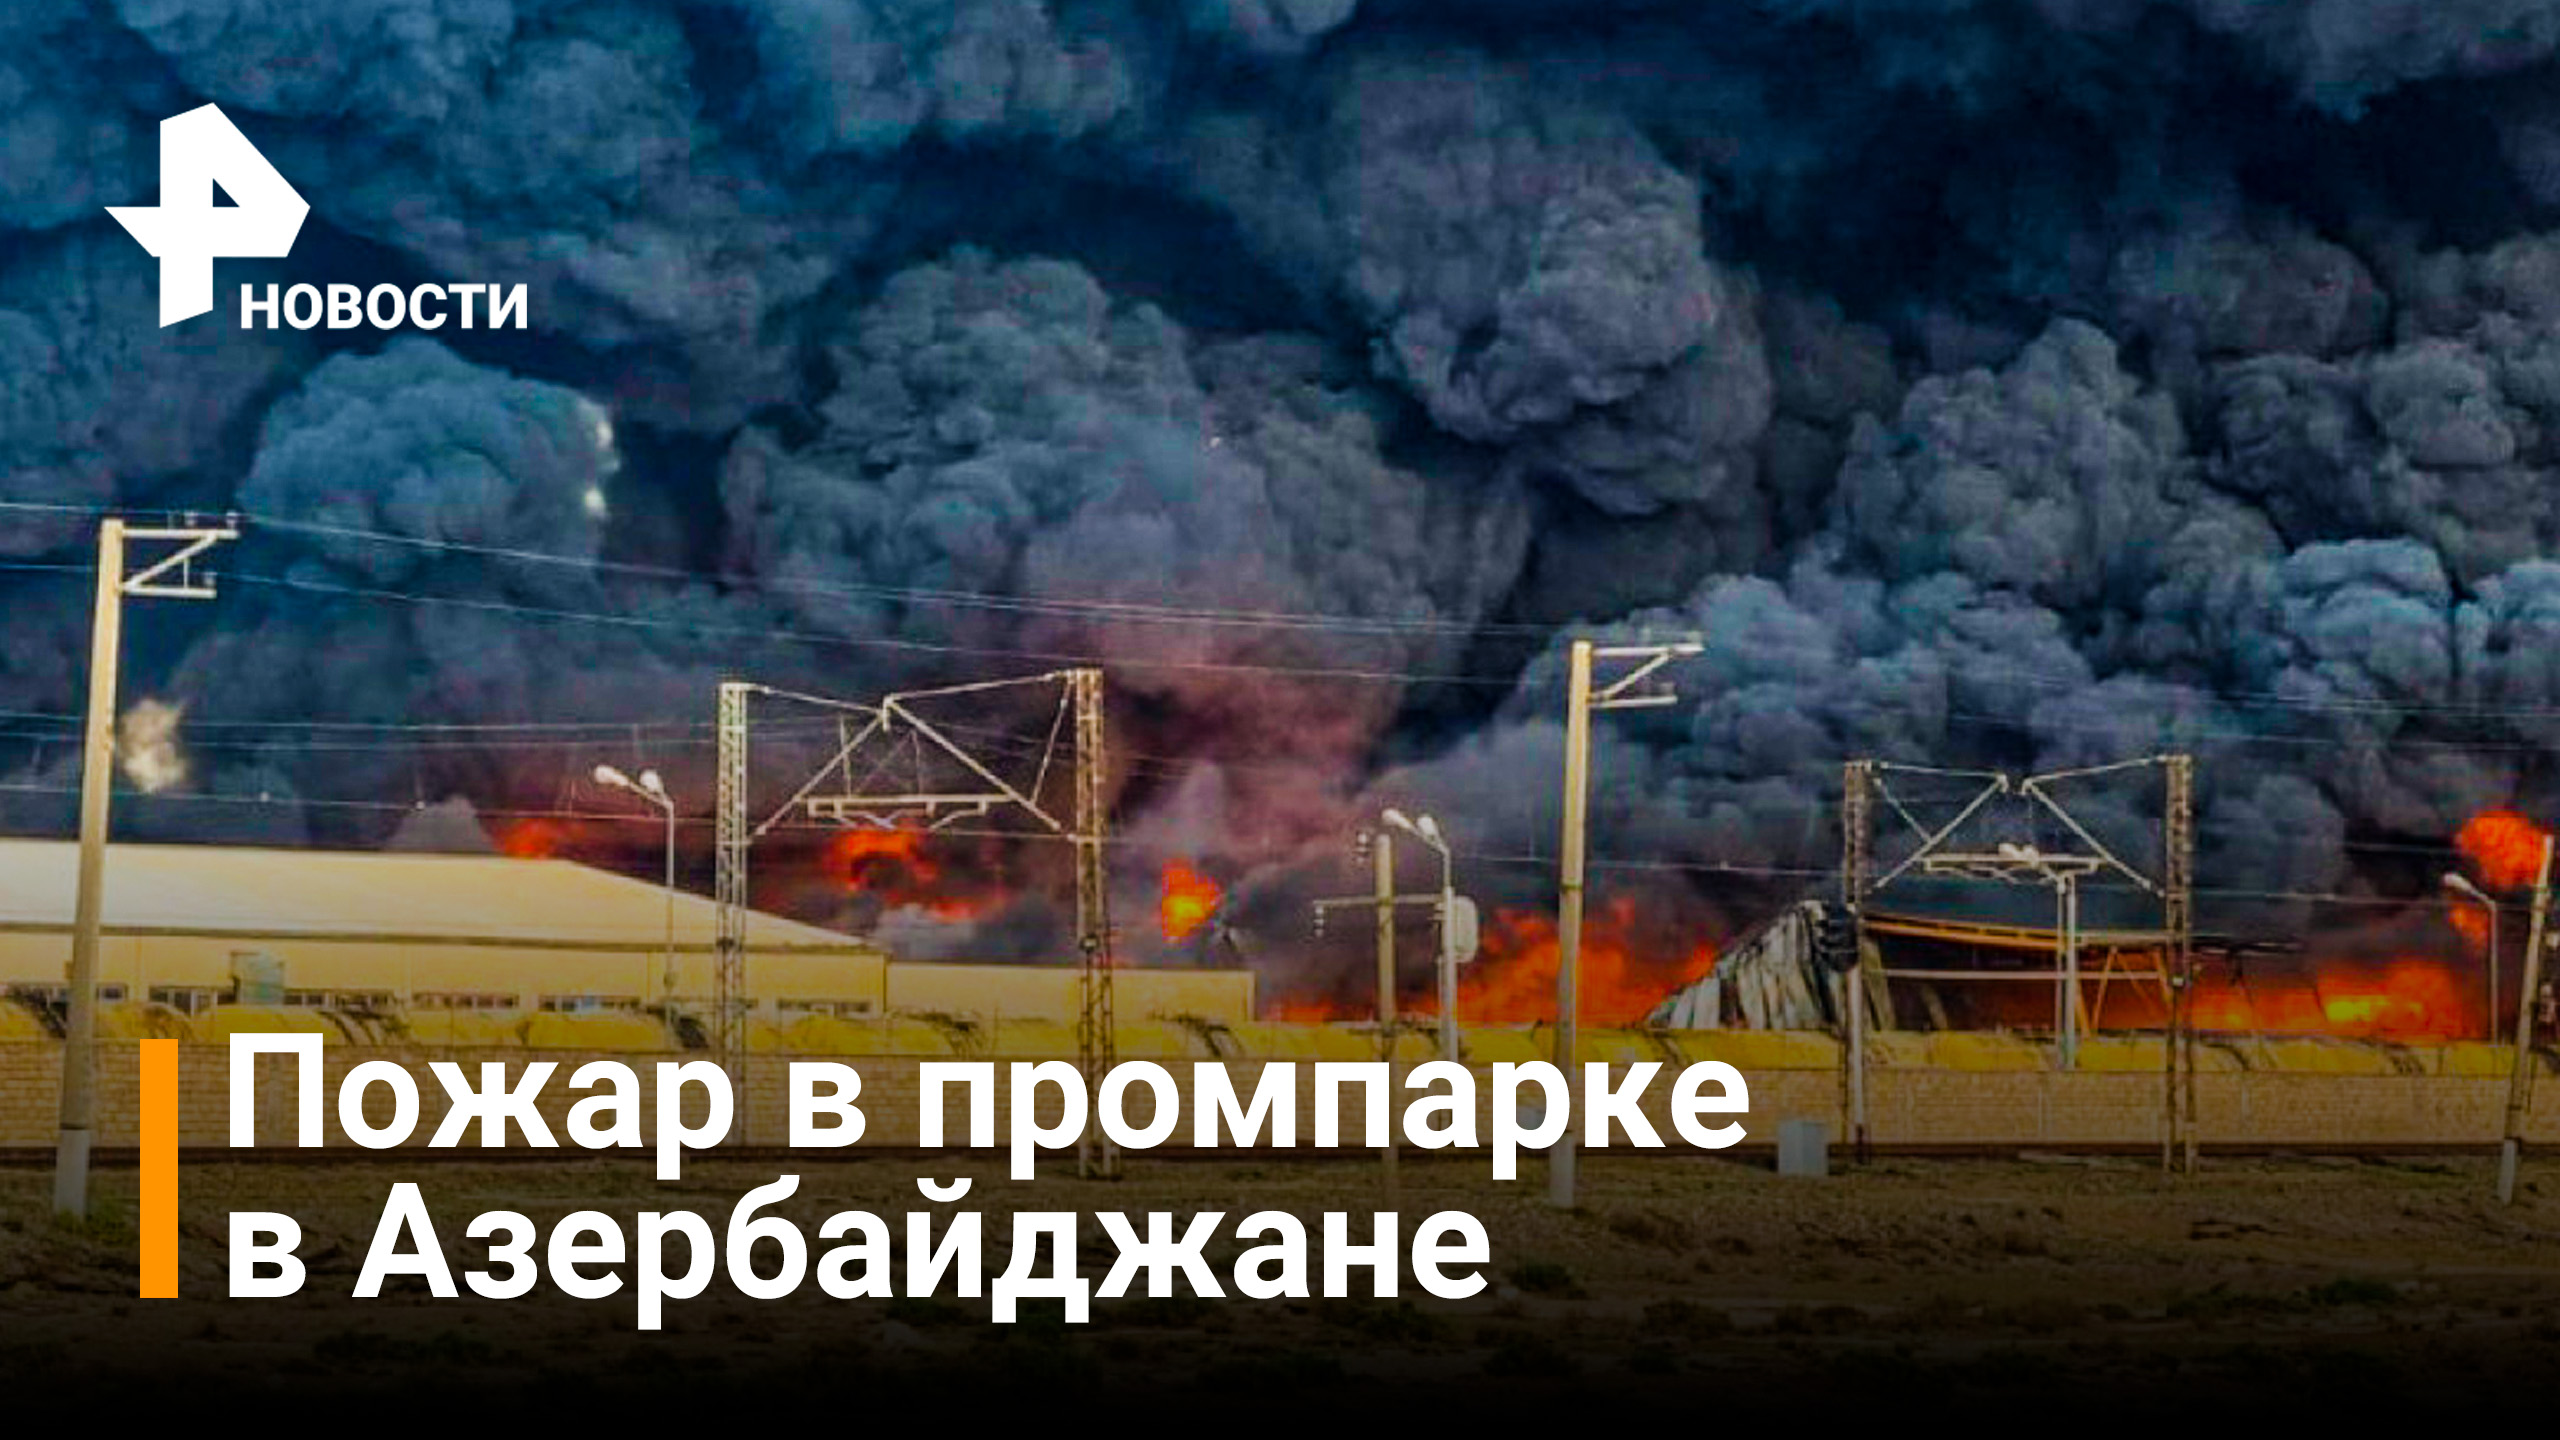 Пожар начался на территории промышленного парка в Азербайджане / Новости РЕН